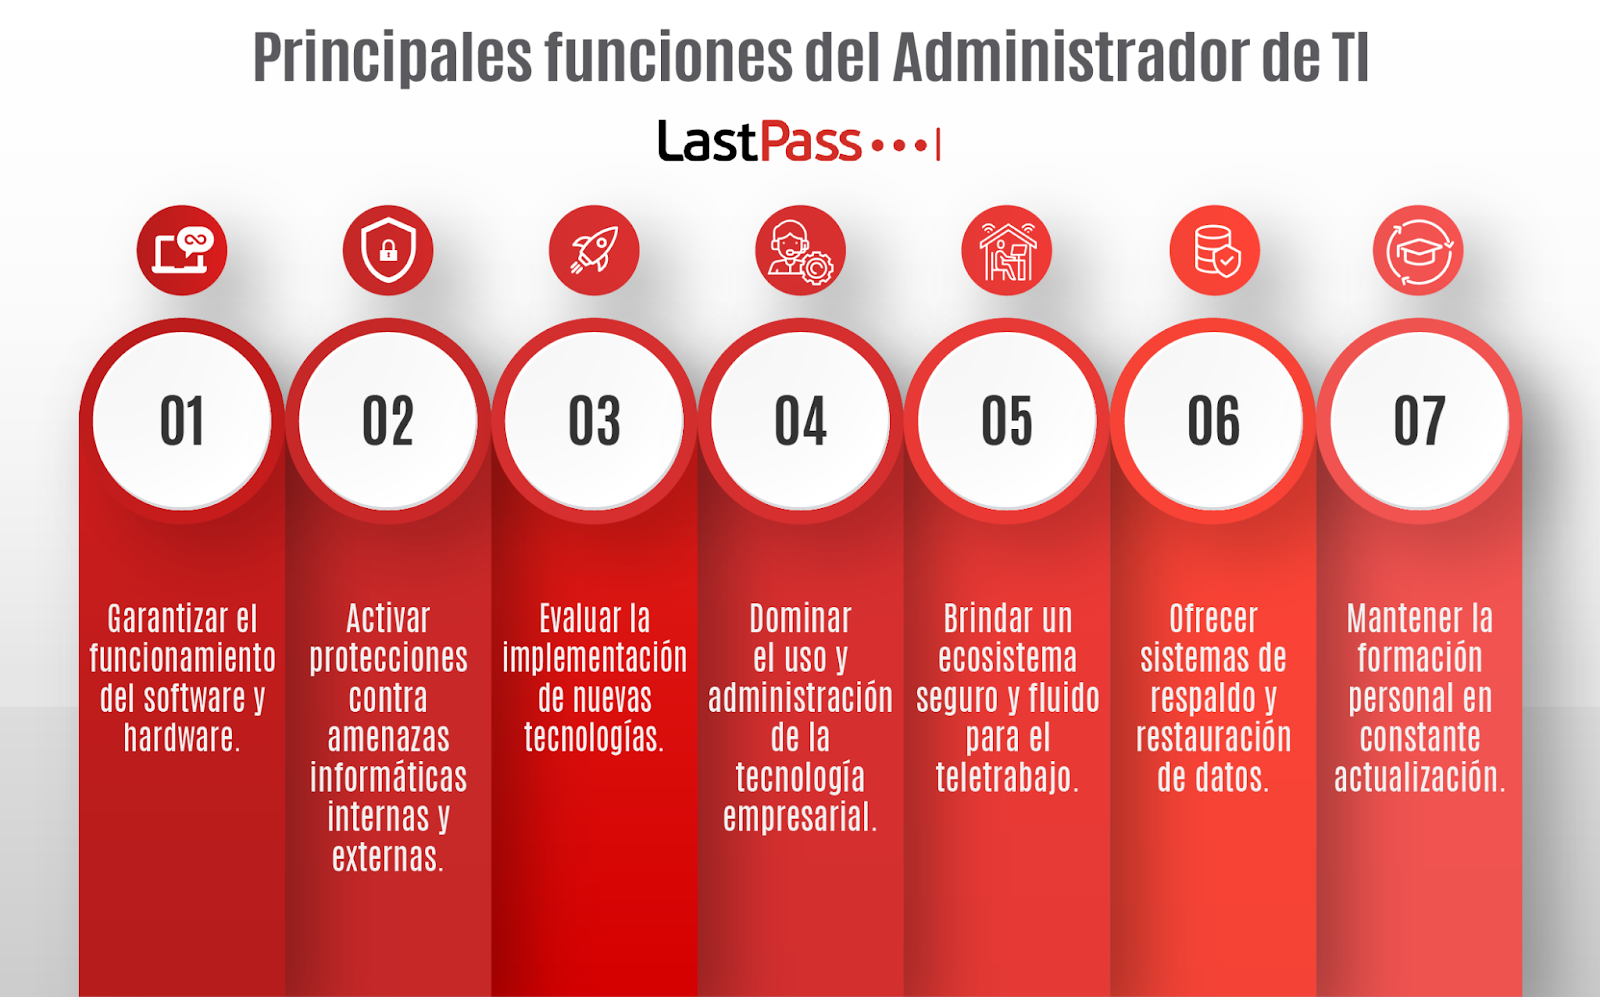 Según nuestra experiencia estas son las principales funciones del administrador de TI.